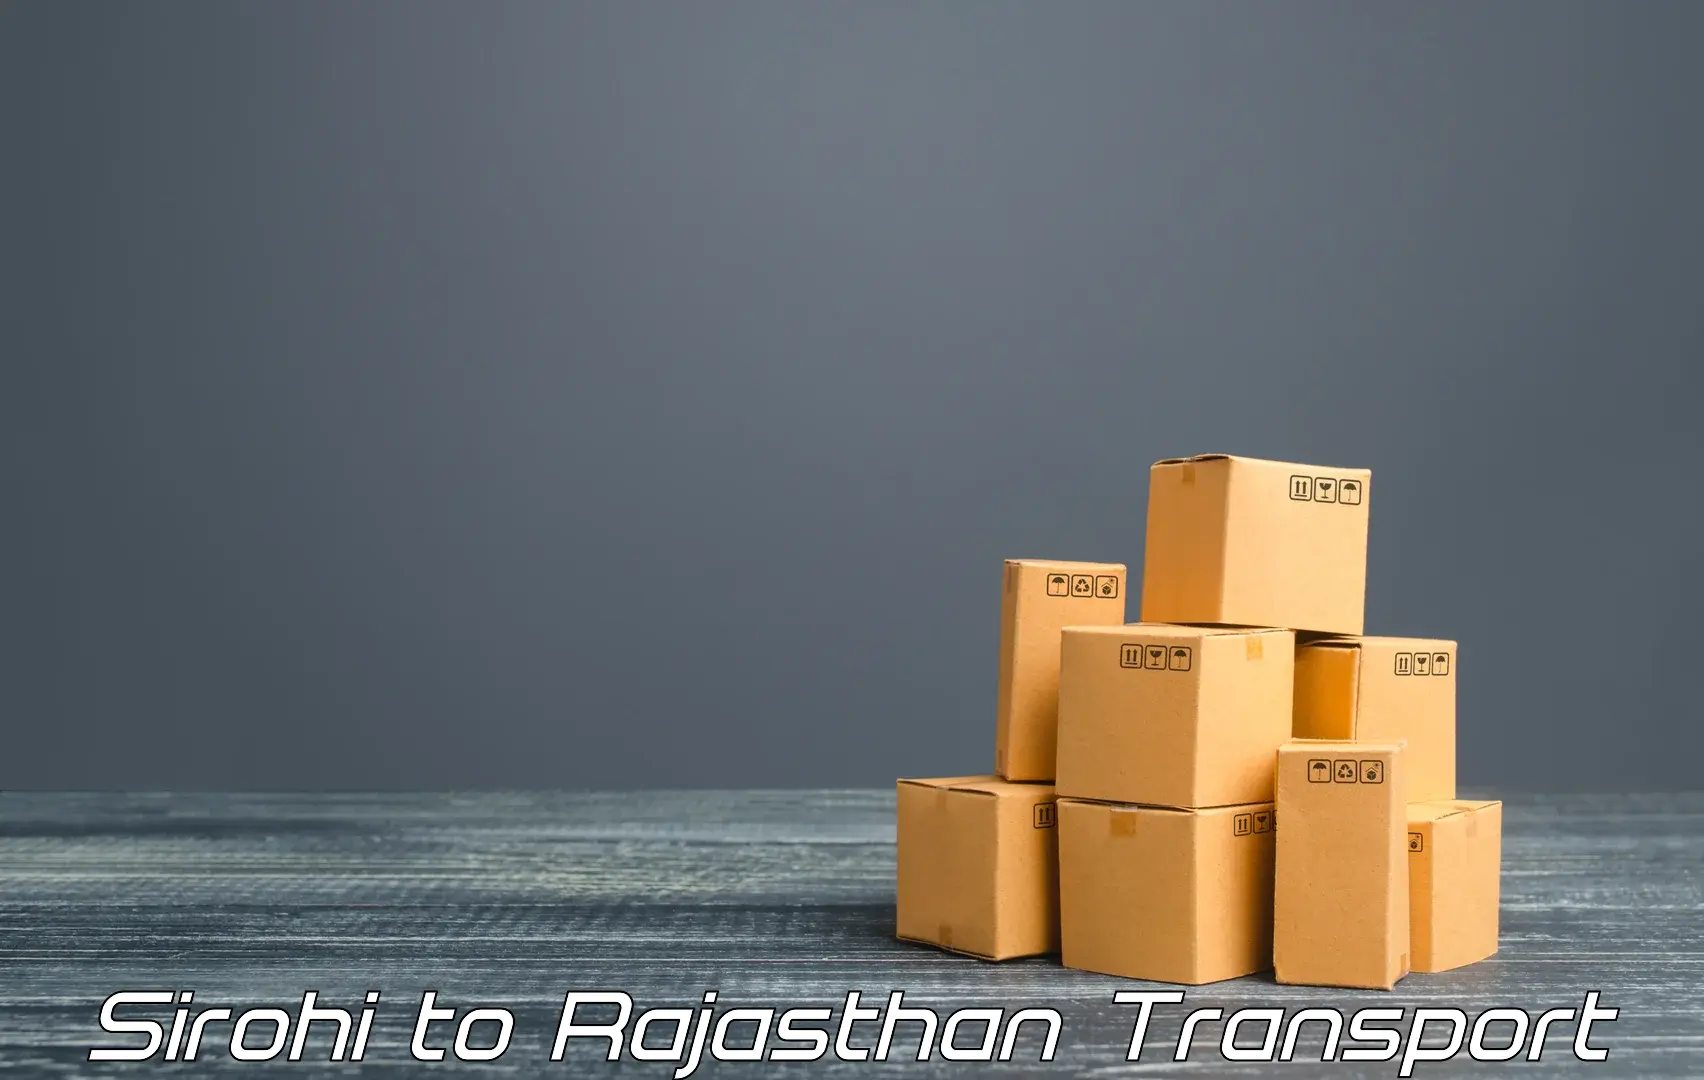 Shipping partner Sirohi to Rajasthan